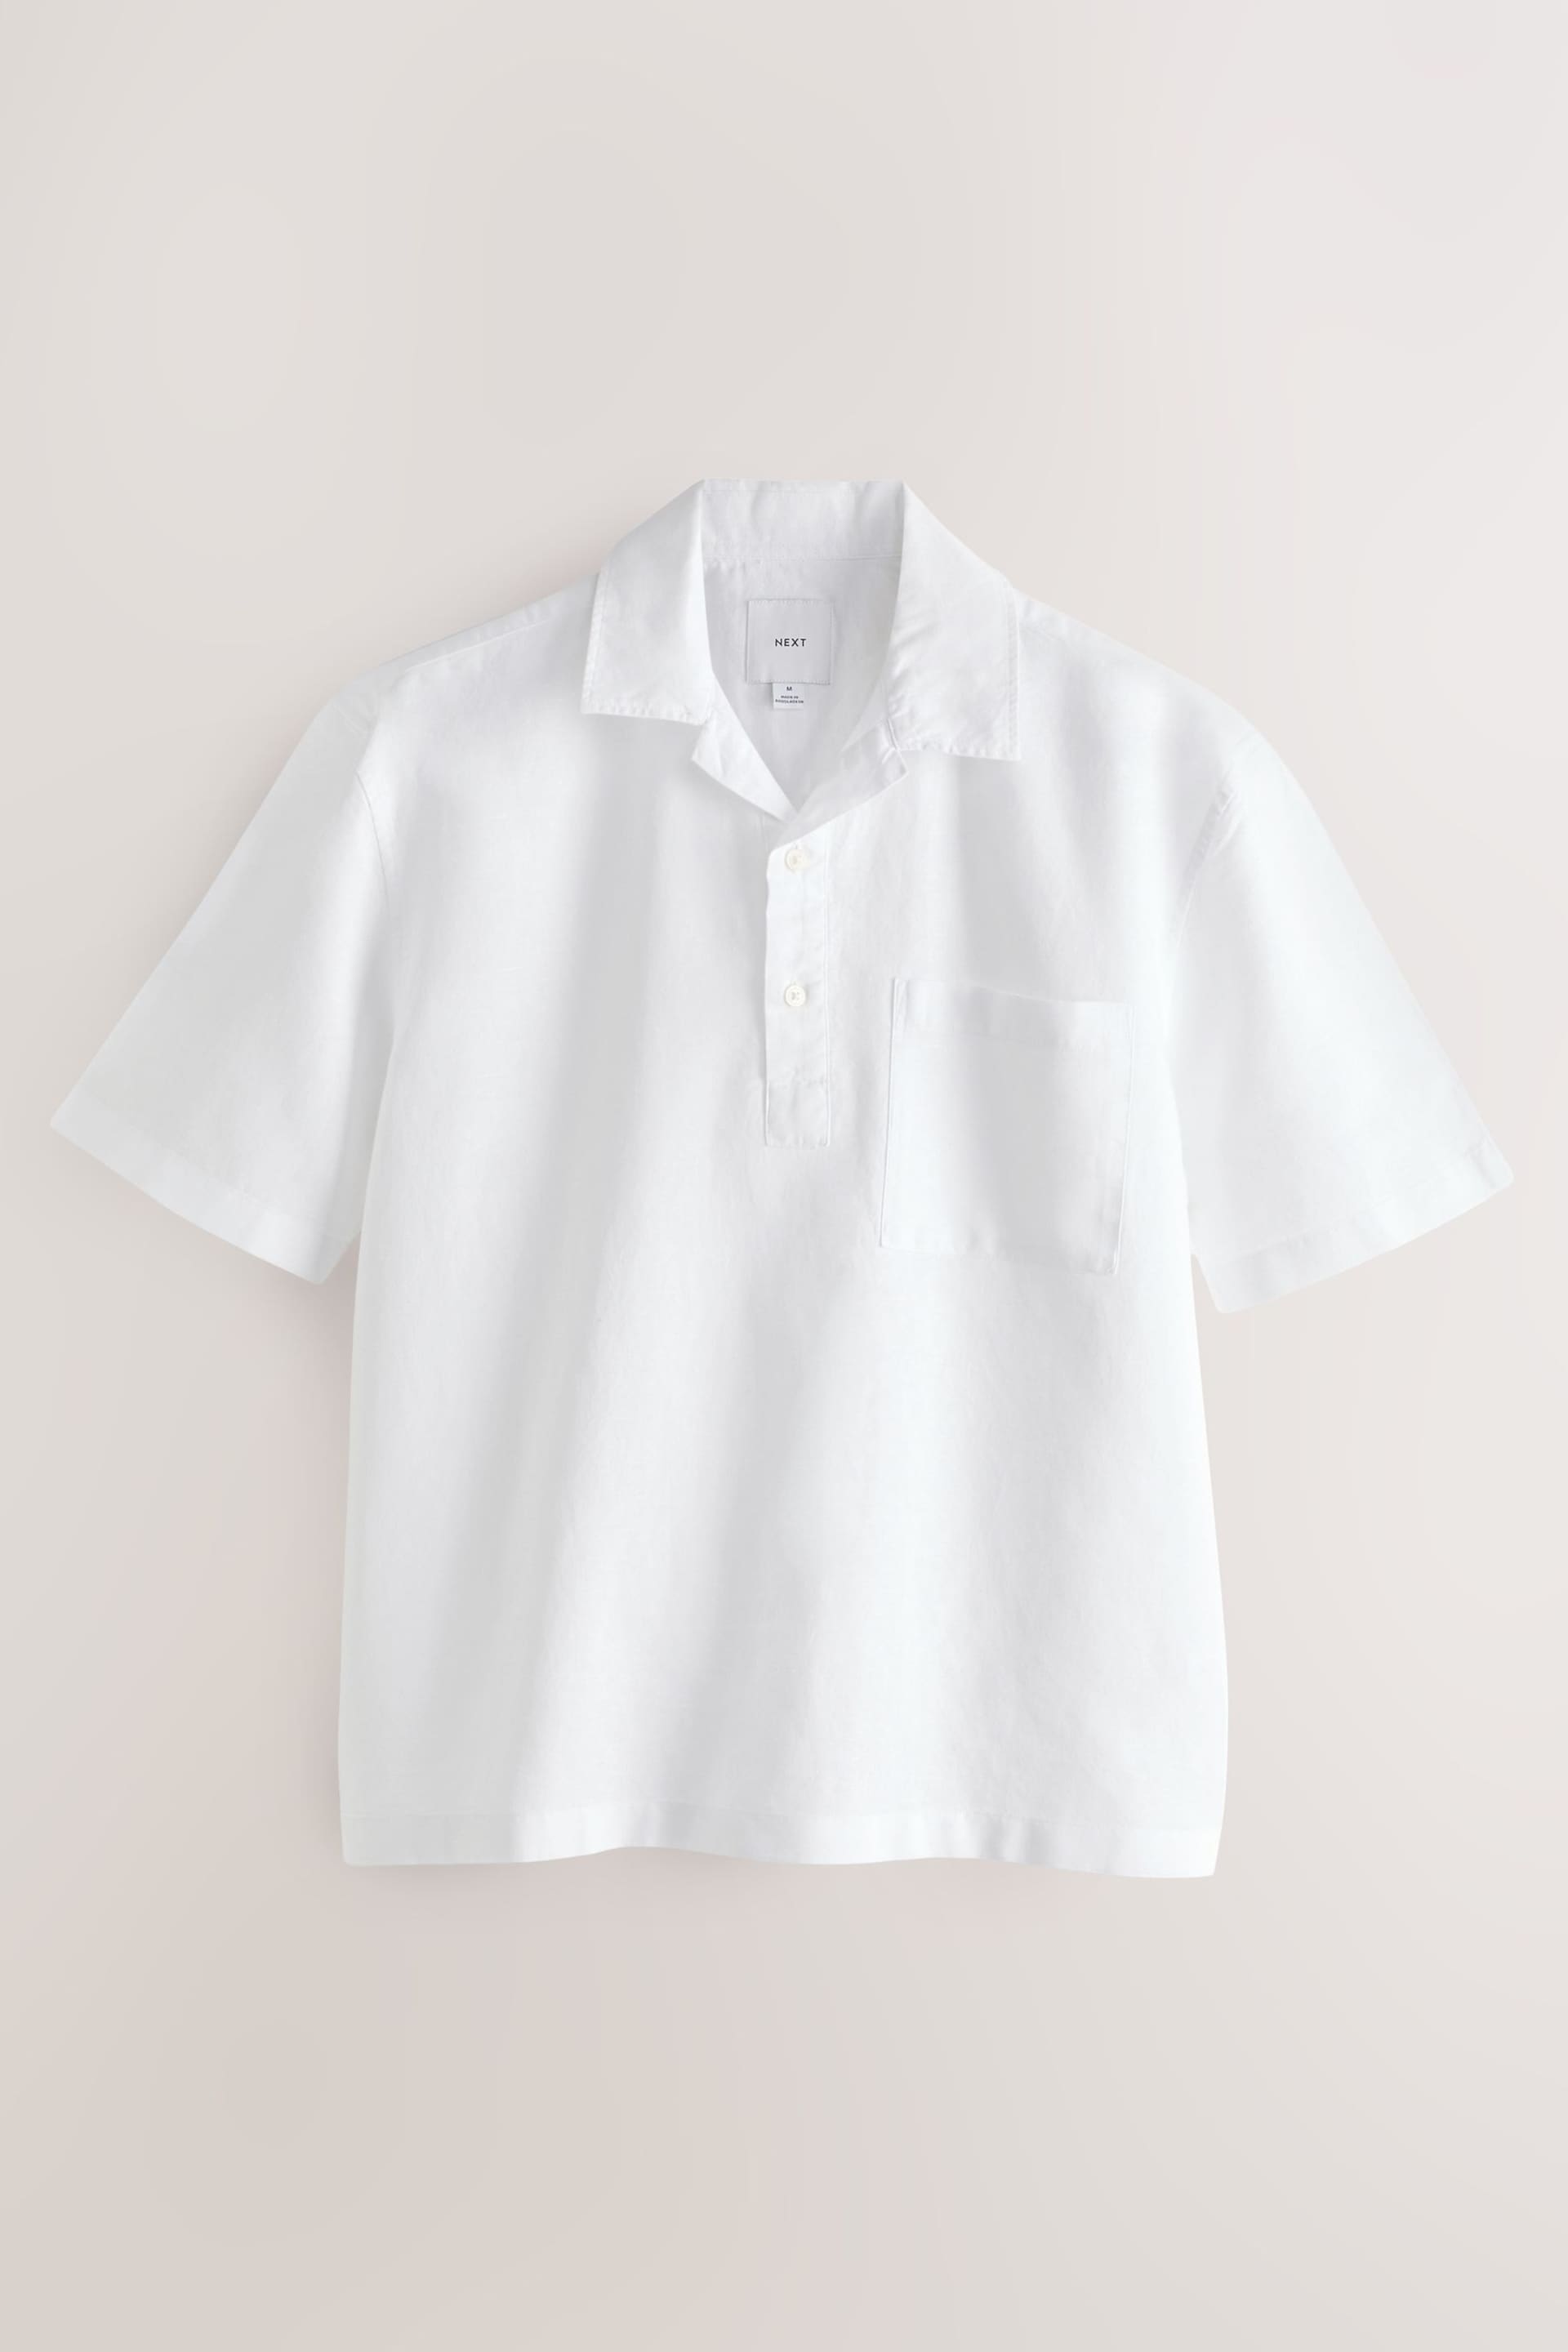 White Overhead Linen Blend Short Sleeve Shirt - Image 5 of 7